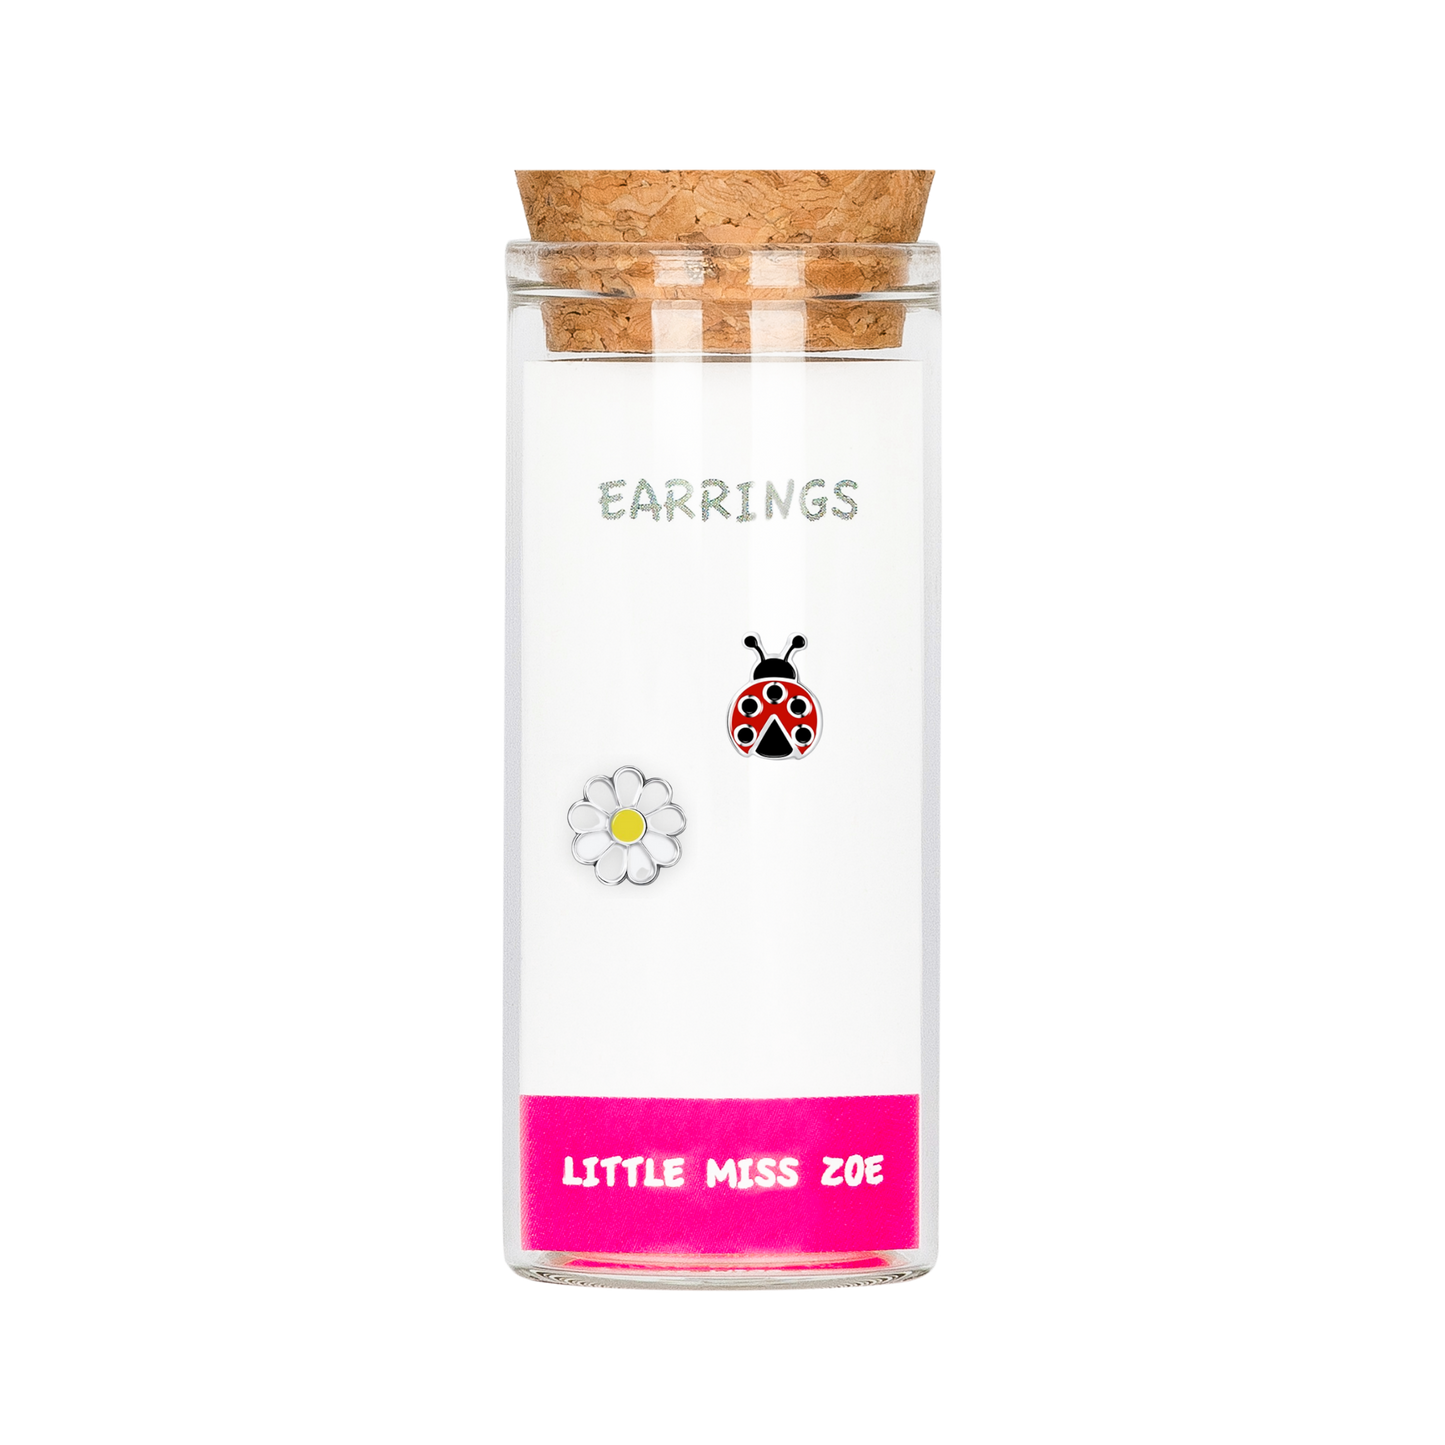 Flower/Ladybug Stud Earrings in a Bottle